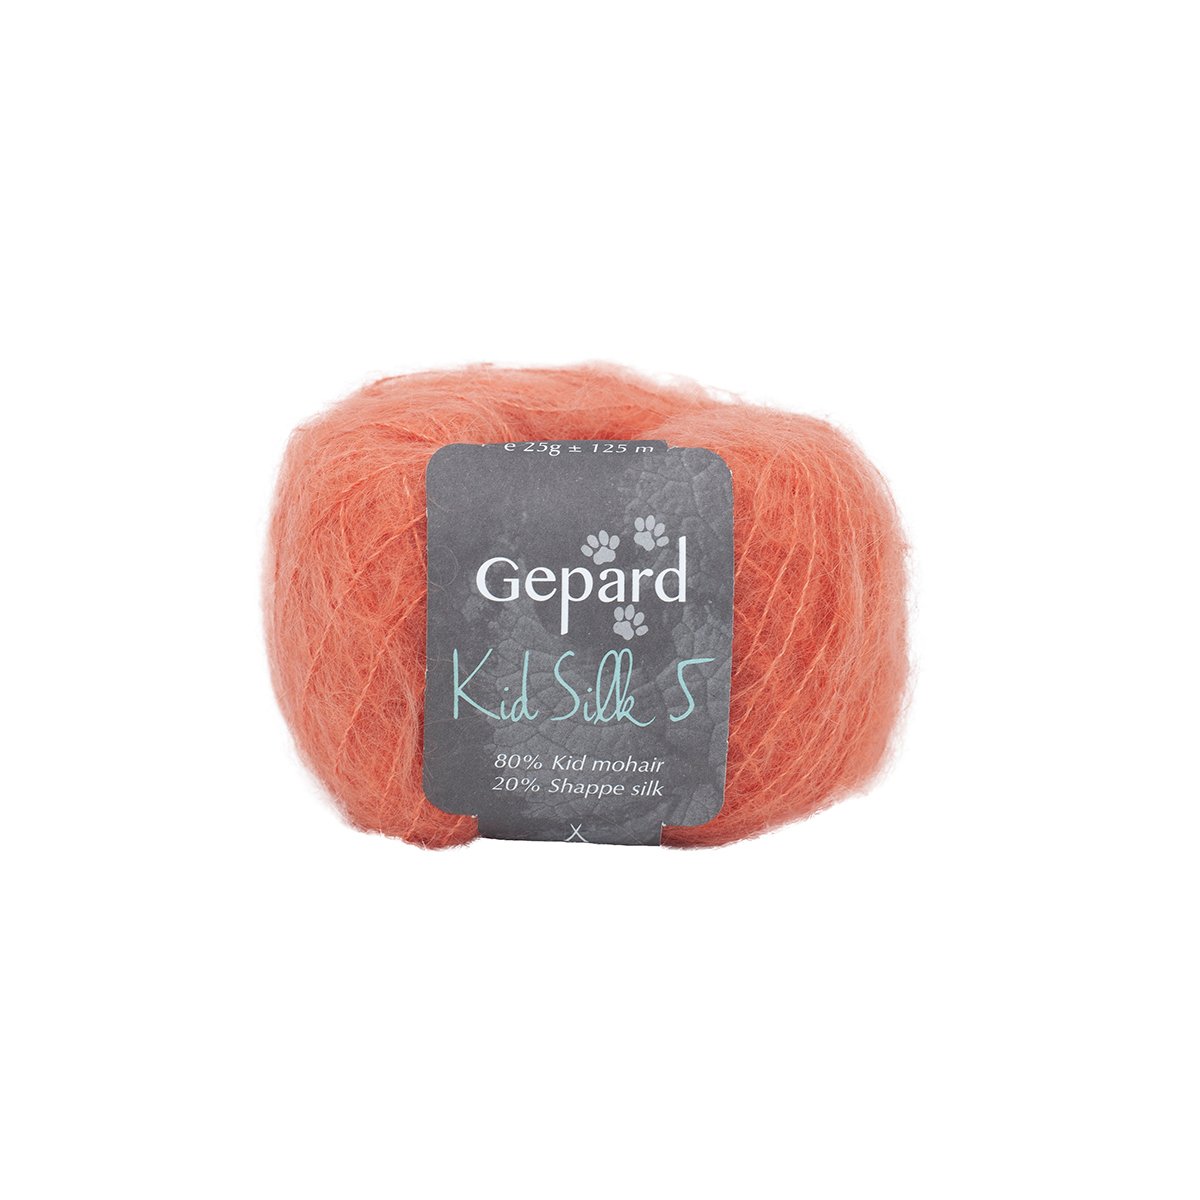 Gepard - Kid Silk 5 - 1441 Orange